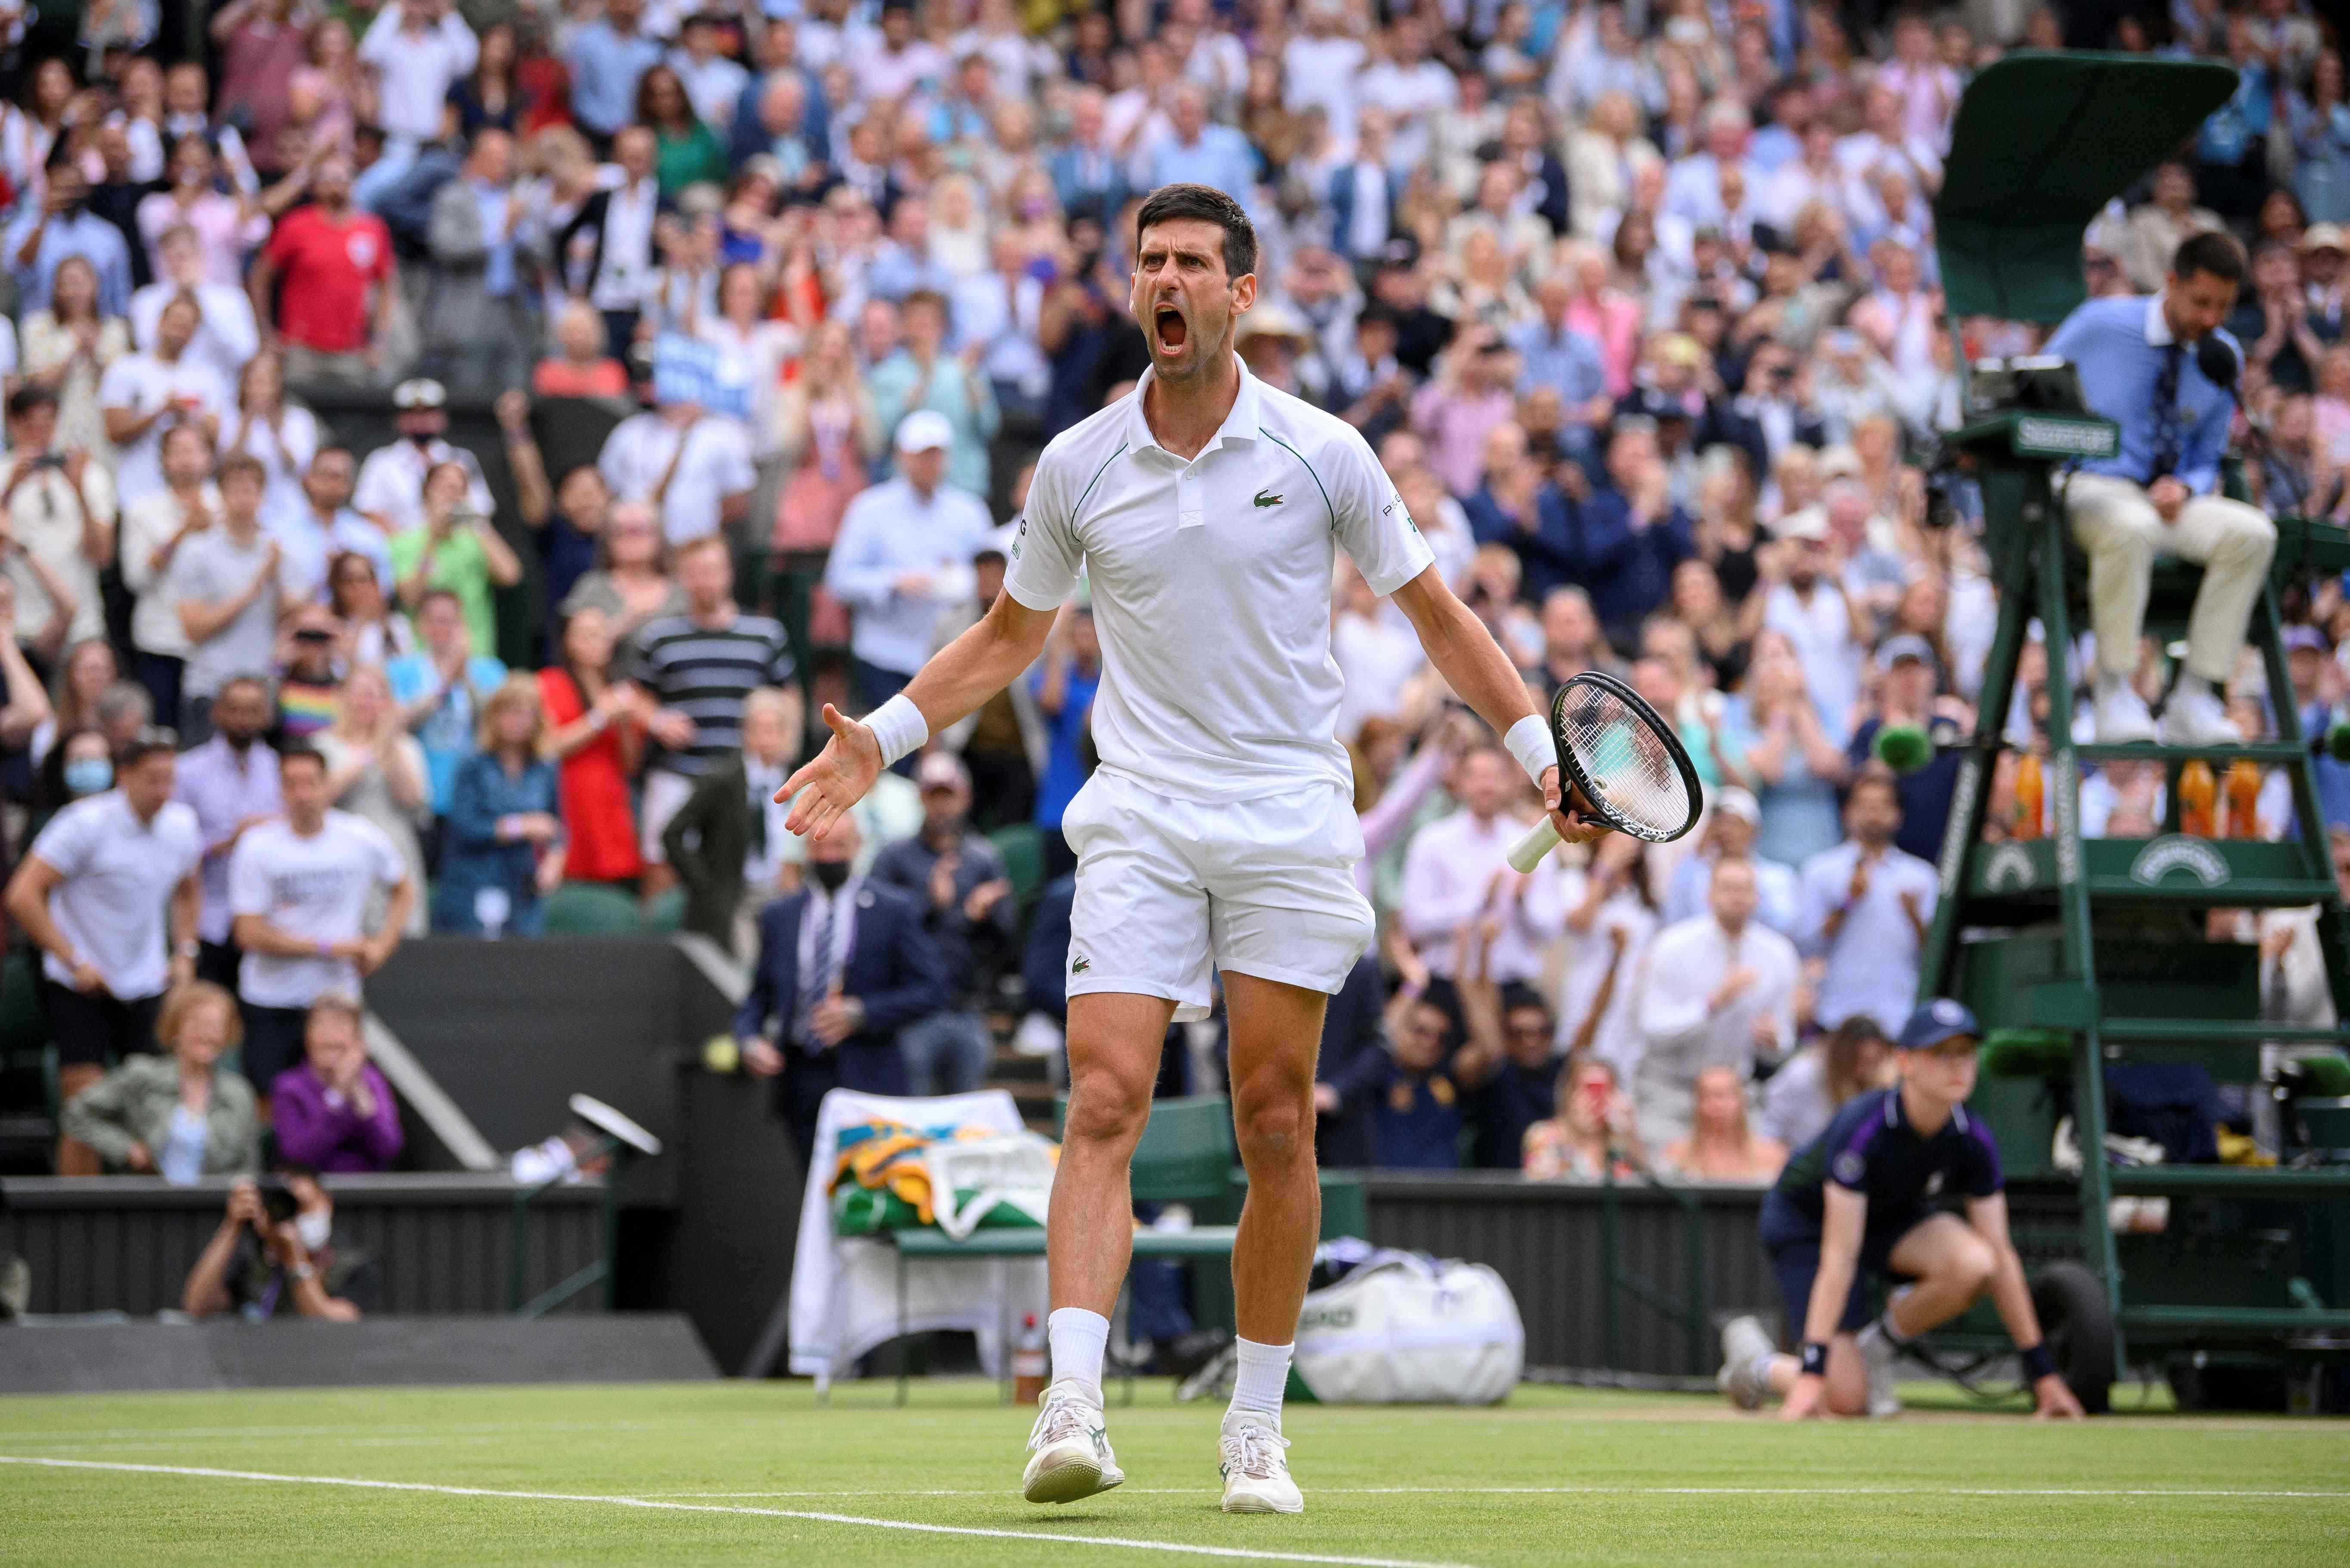 Wimbledonda finalin adı belli oldu: Novak Djokovic - Matteo Berrettini